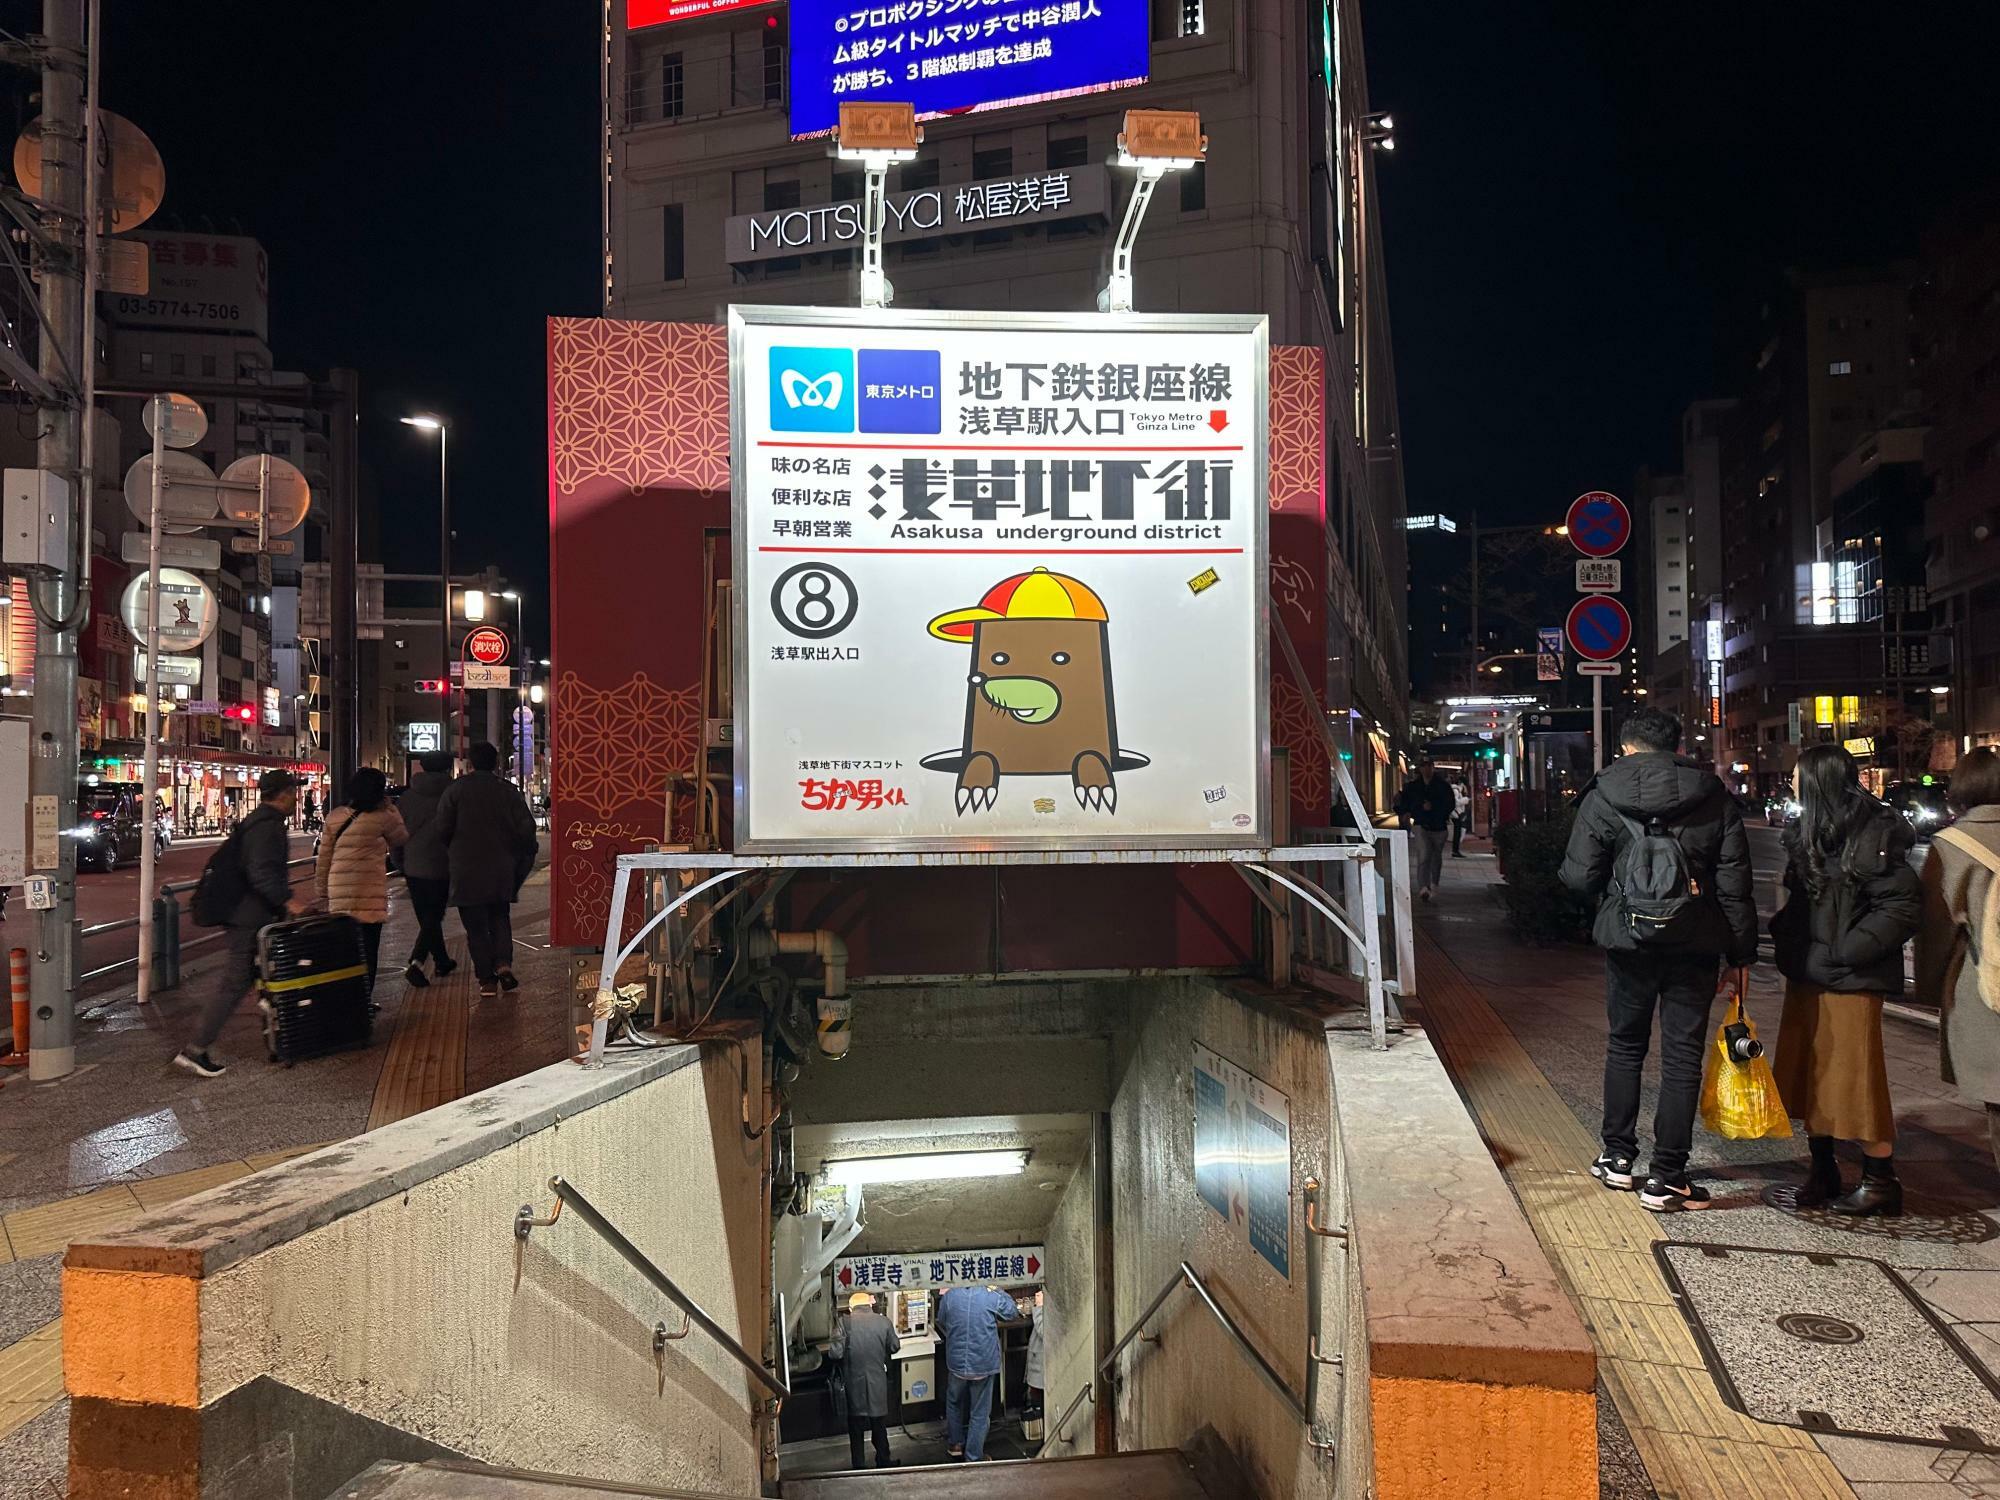 東京メトロ銀座線「浅草駅」に直結している『浅草地下街』。